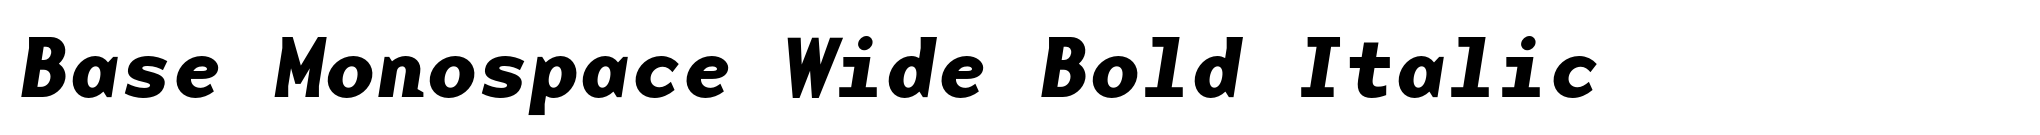 Base Monospace Wide Bold Italic image